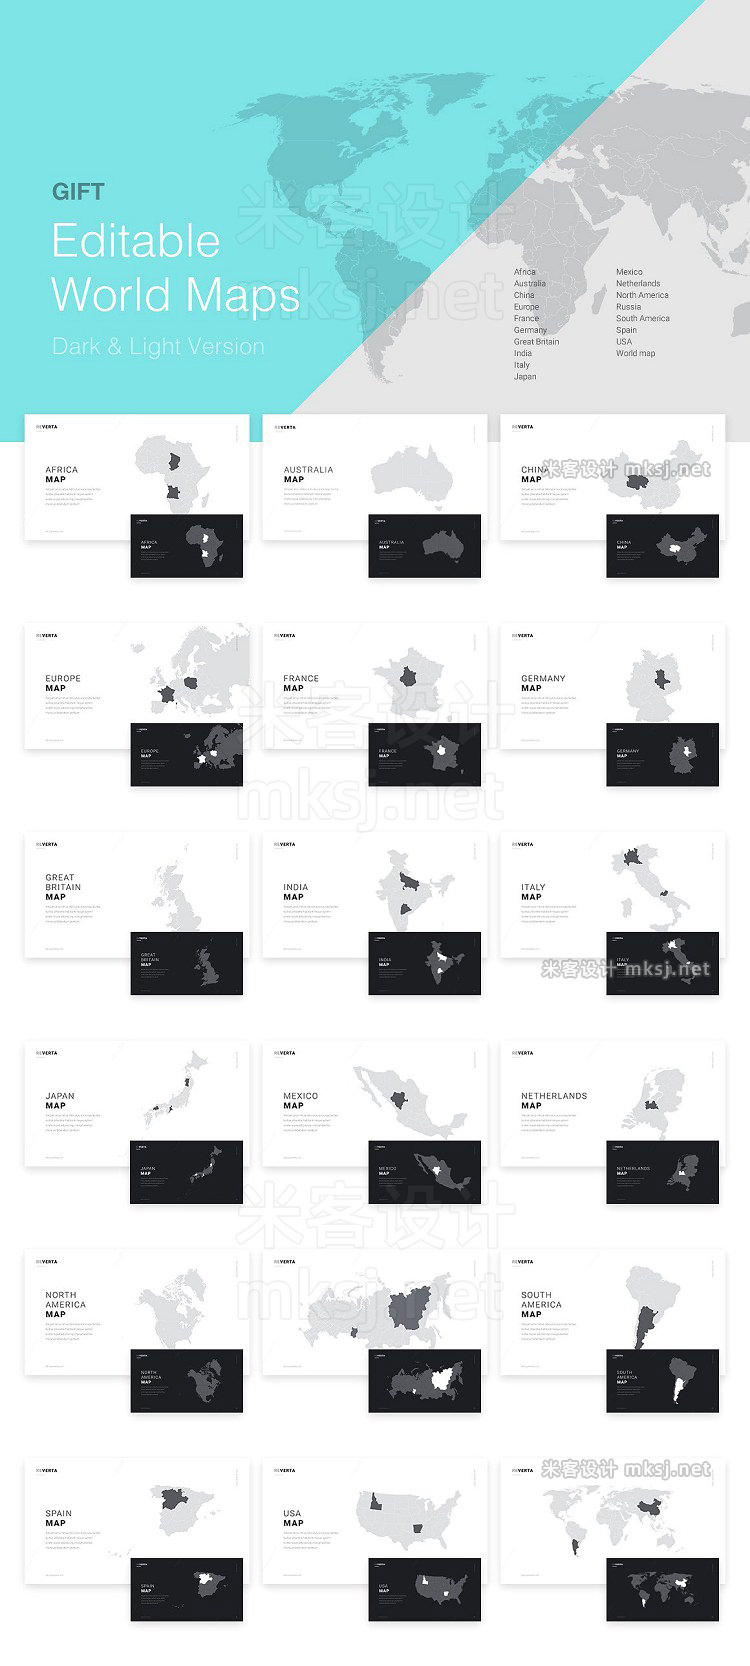 欧美英文专业图表创意组合PPT模板 Reverta Google Slides Template